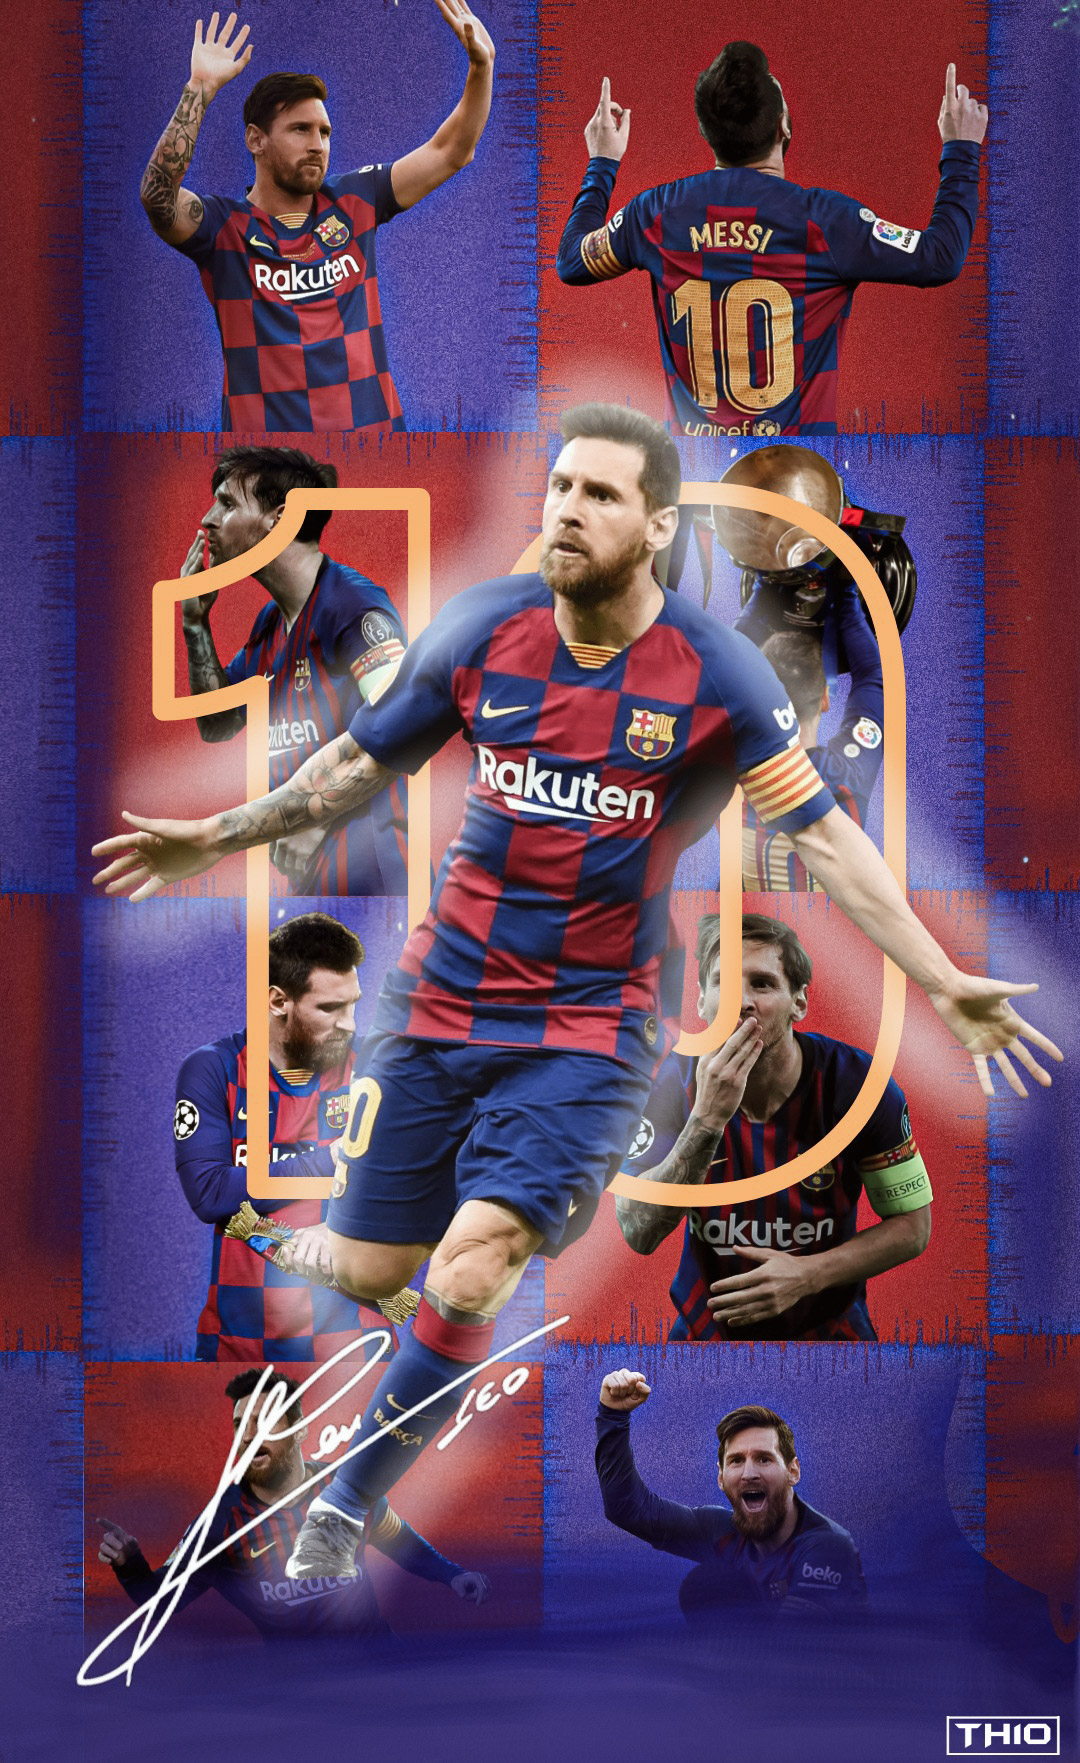 Lionel Messi 2020 Wallpaper - Wallpaper Cave